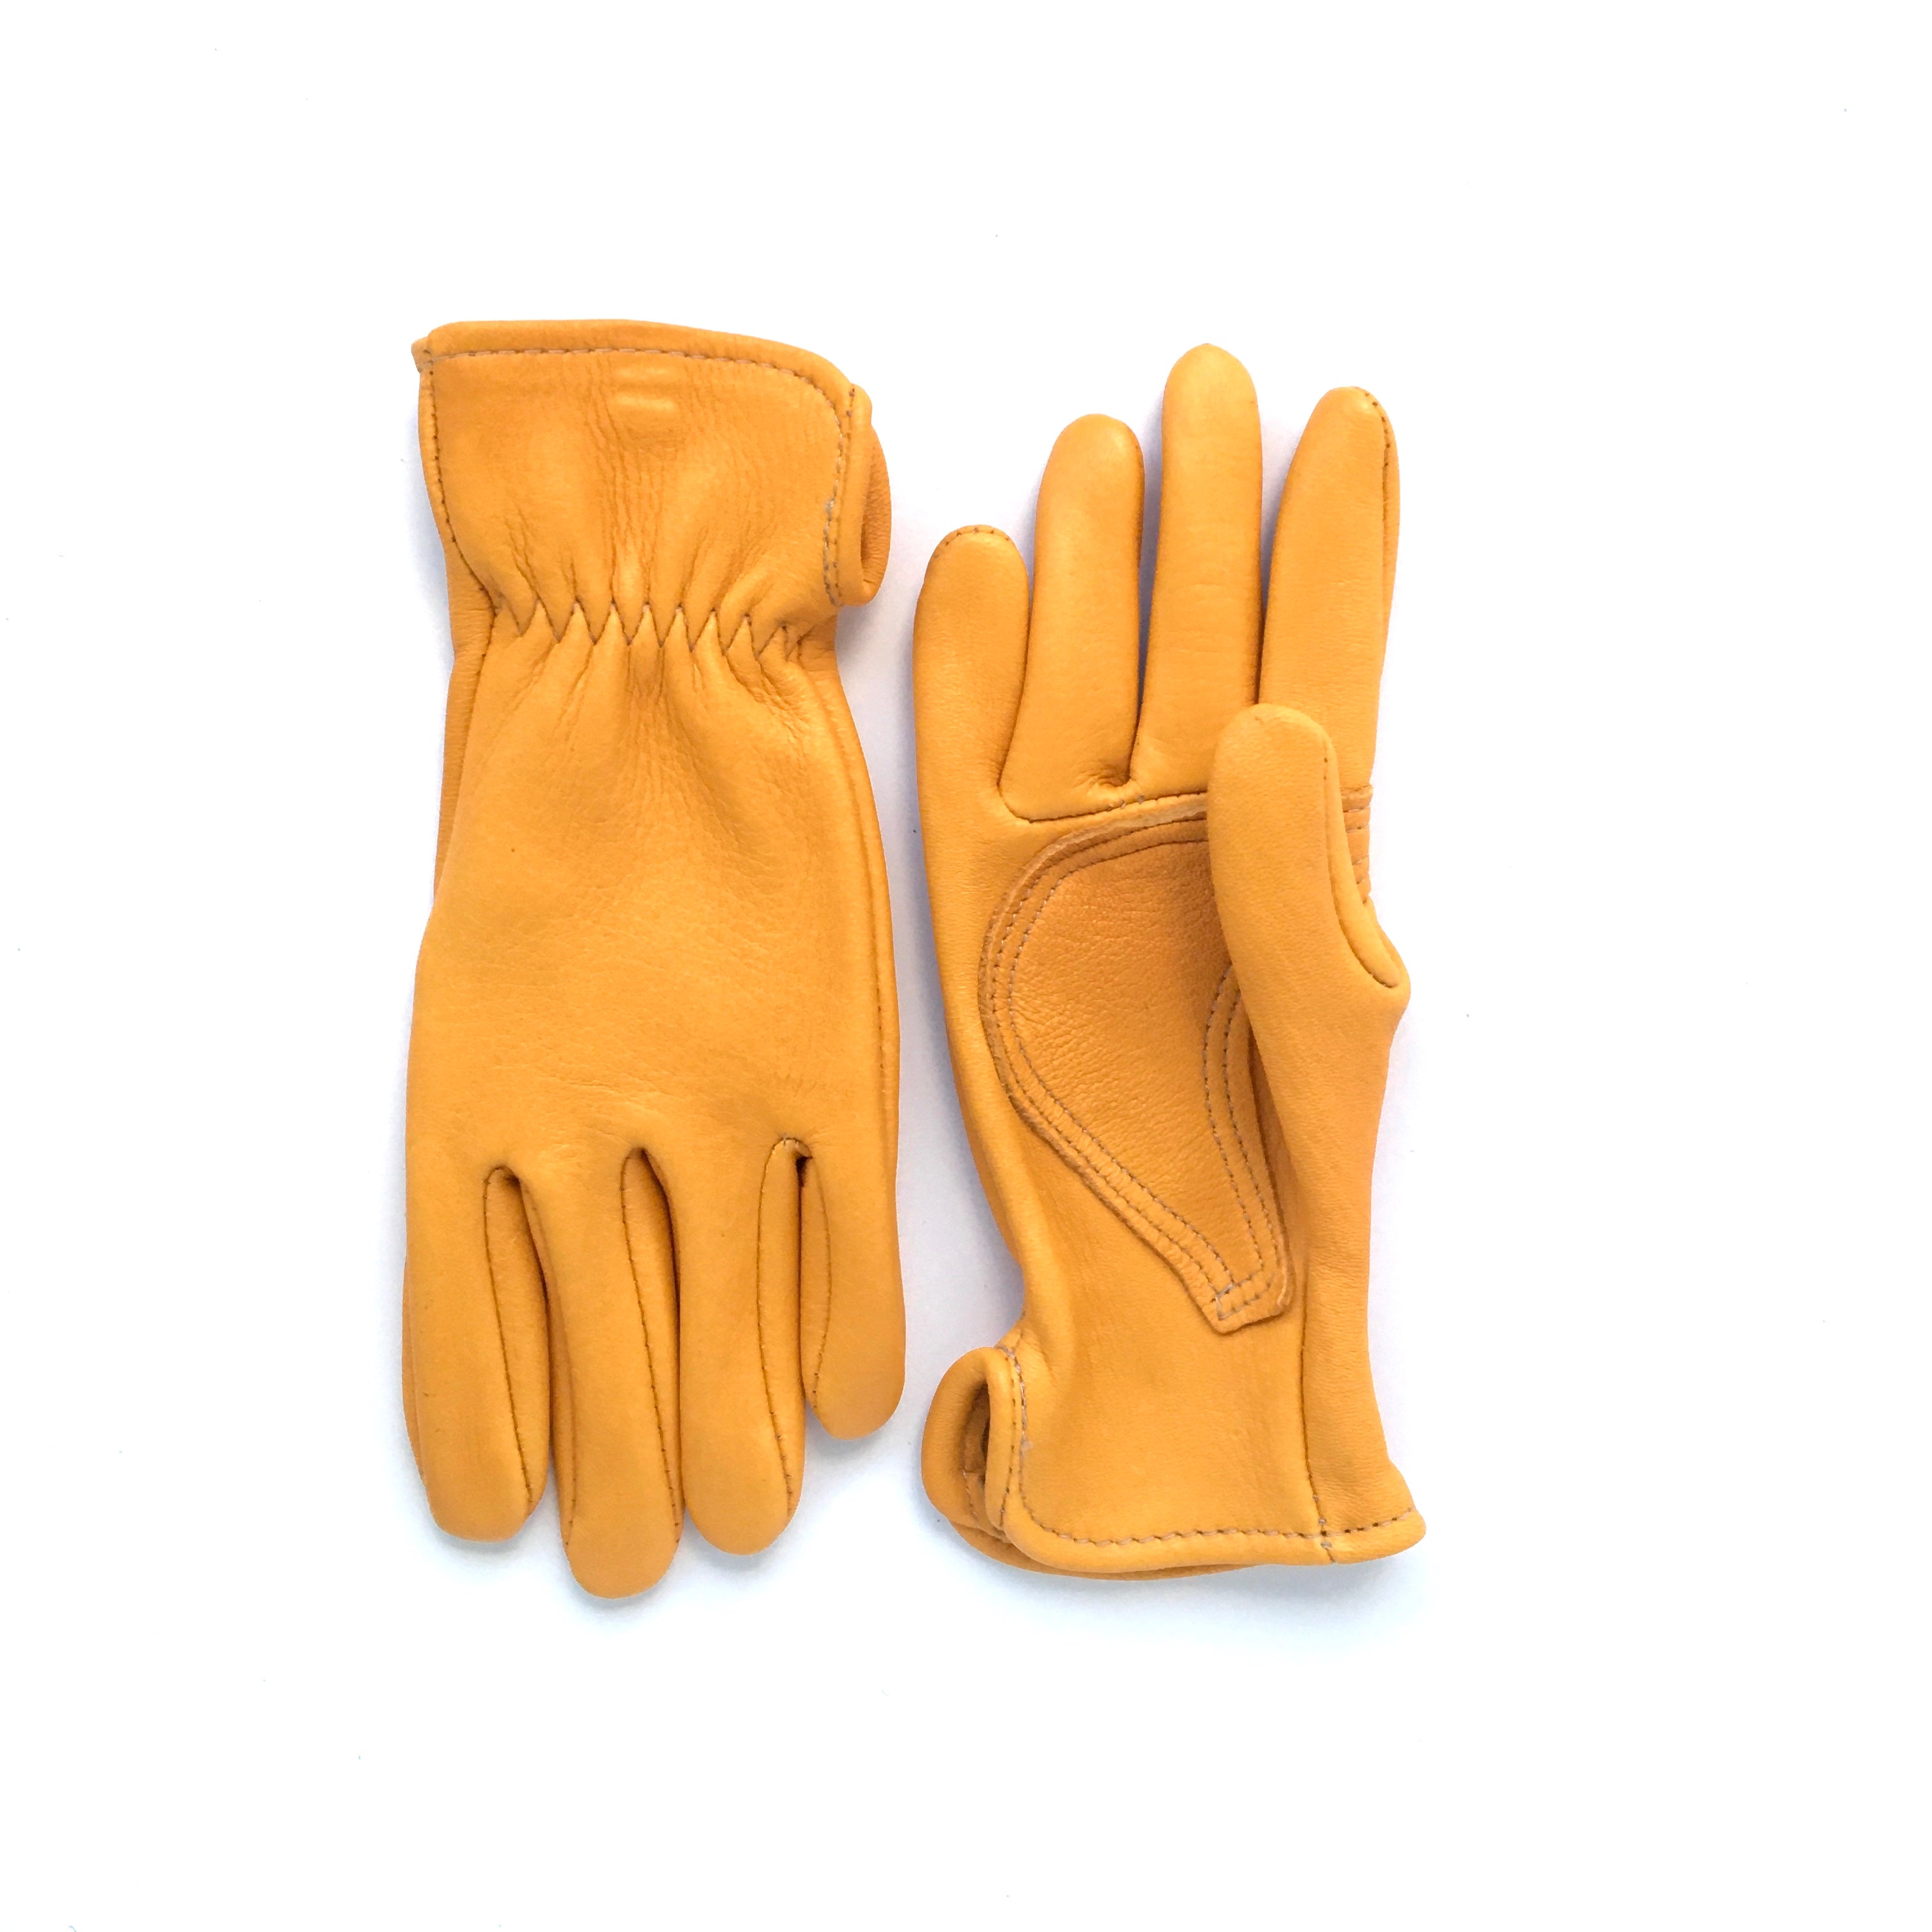 Landscaper Series Deerhide Leather Gloves